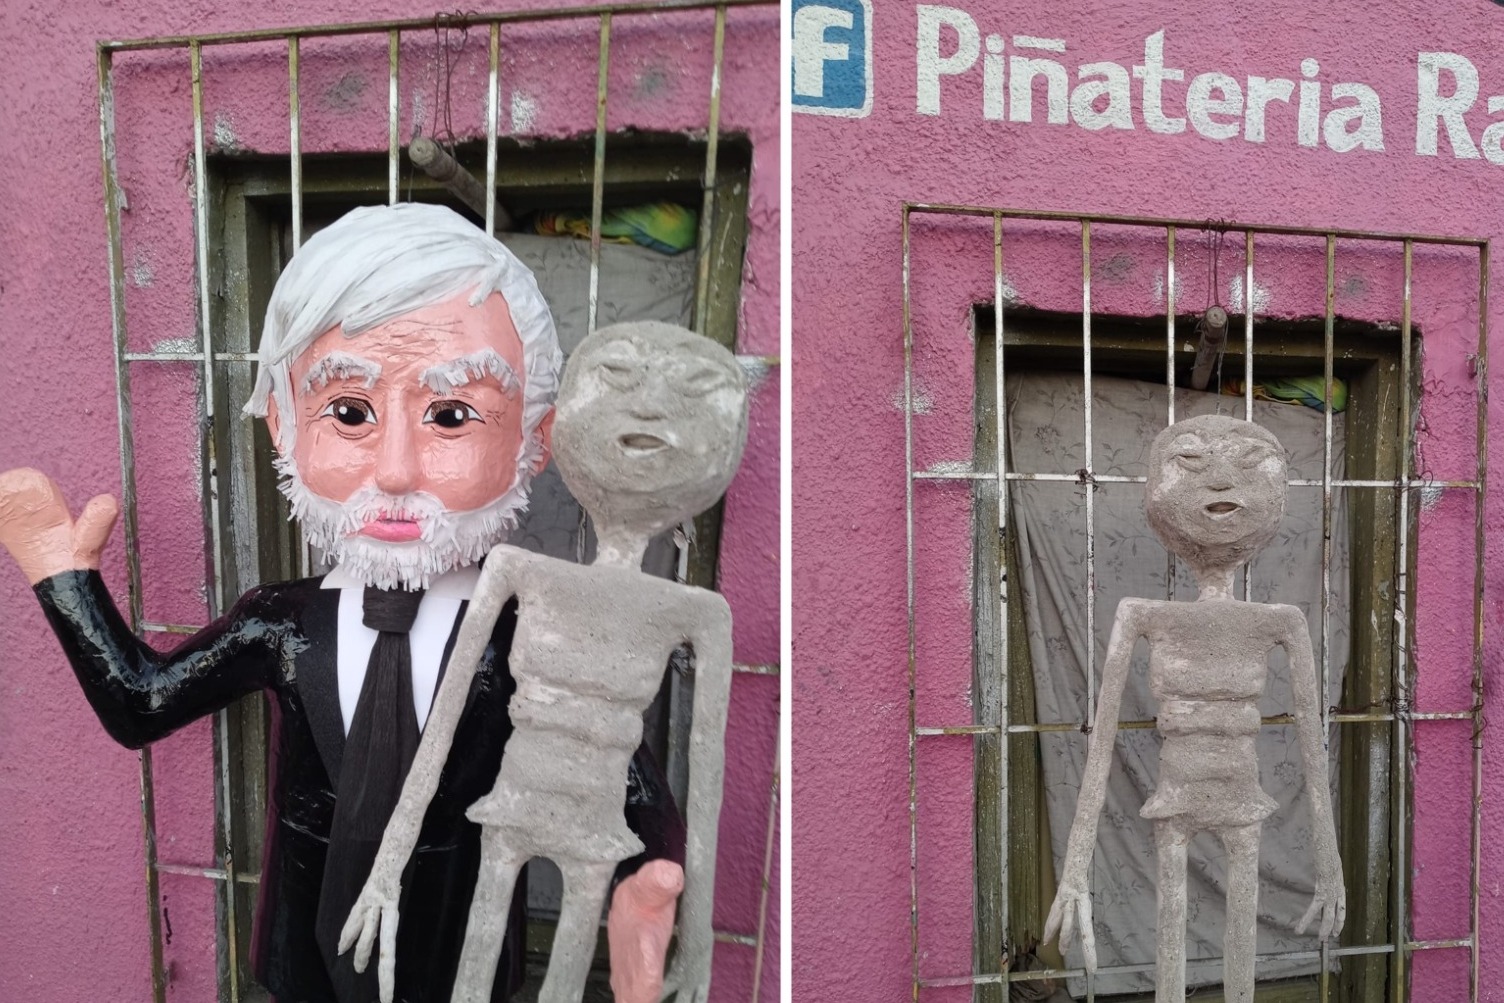 La famosa tienda de Reynosa Tamaulipas se volvió viral, ahora por la publicación en sus redes sociales de una imagen de la nueva piñata dedicada al investigador mexicano del fenómeno OVNI